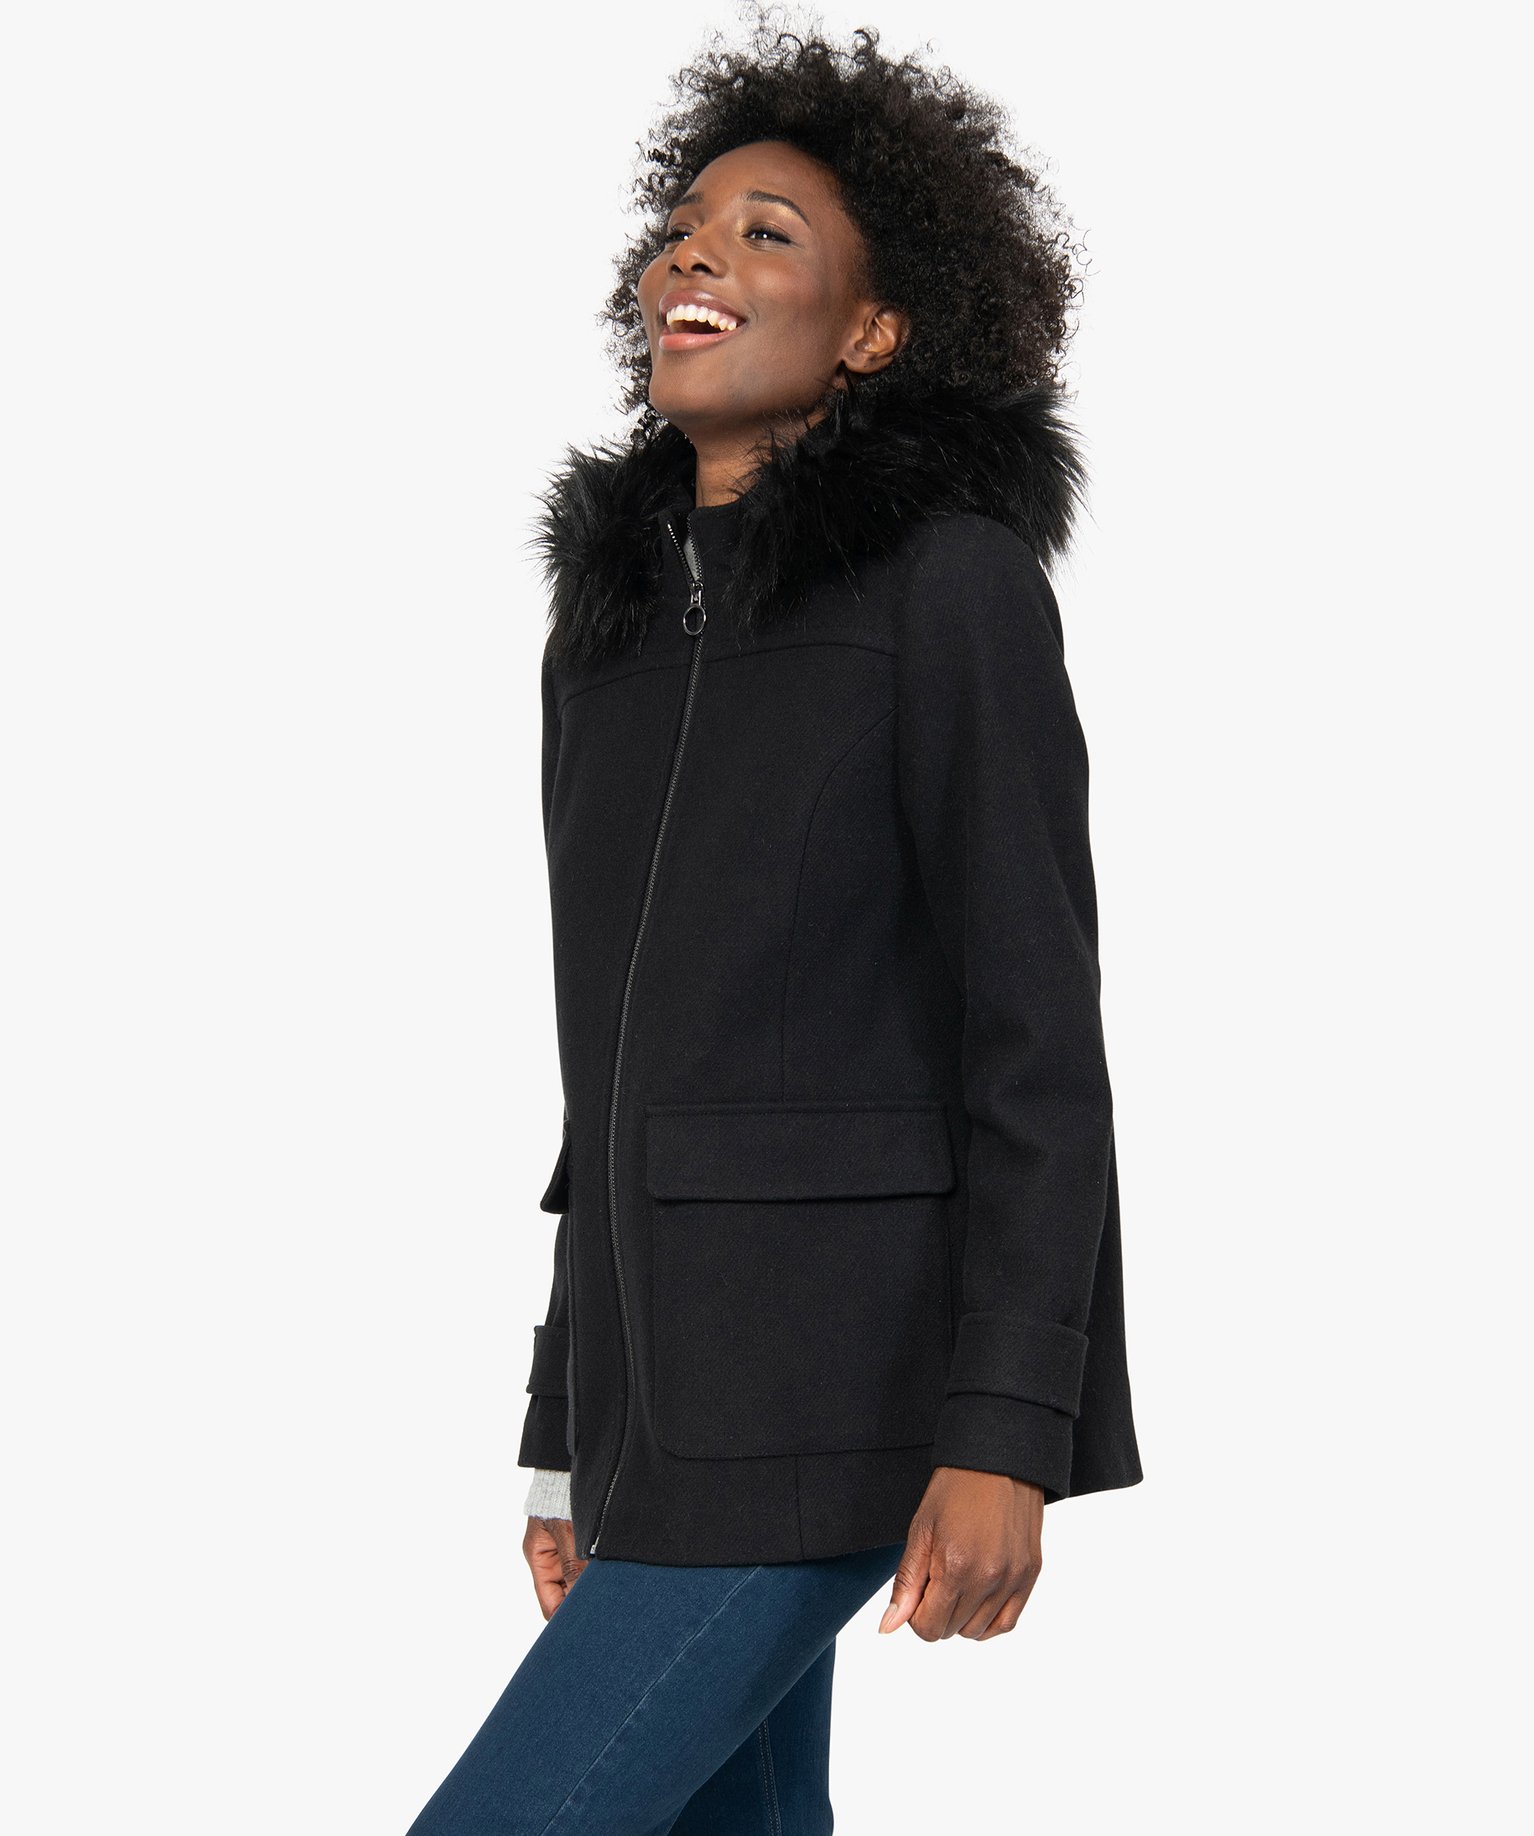 manteau a capuche femme noir